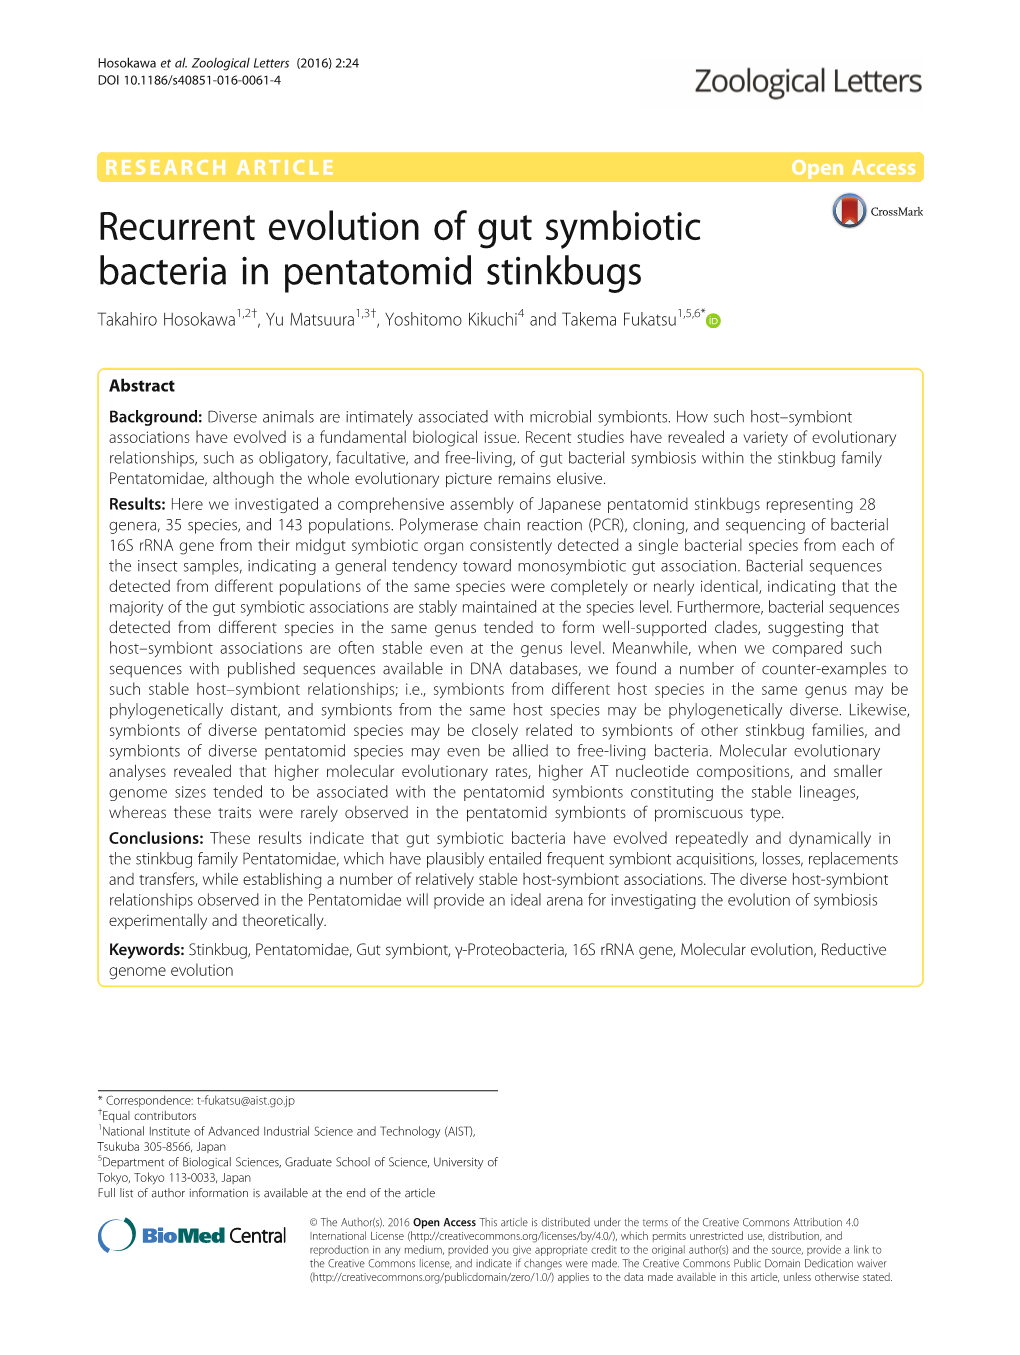 Recurrent Evolution of Gut Symbiotic Bacteria in Pentatomid Stinkbugs Takahiro Hosokawa1,2†, Yu Matsuura1,3†, Yoshitomo Kikuchi4 and Takema Fukatsu1,5,6*